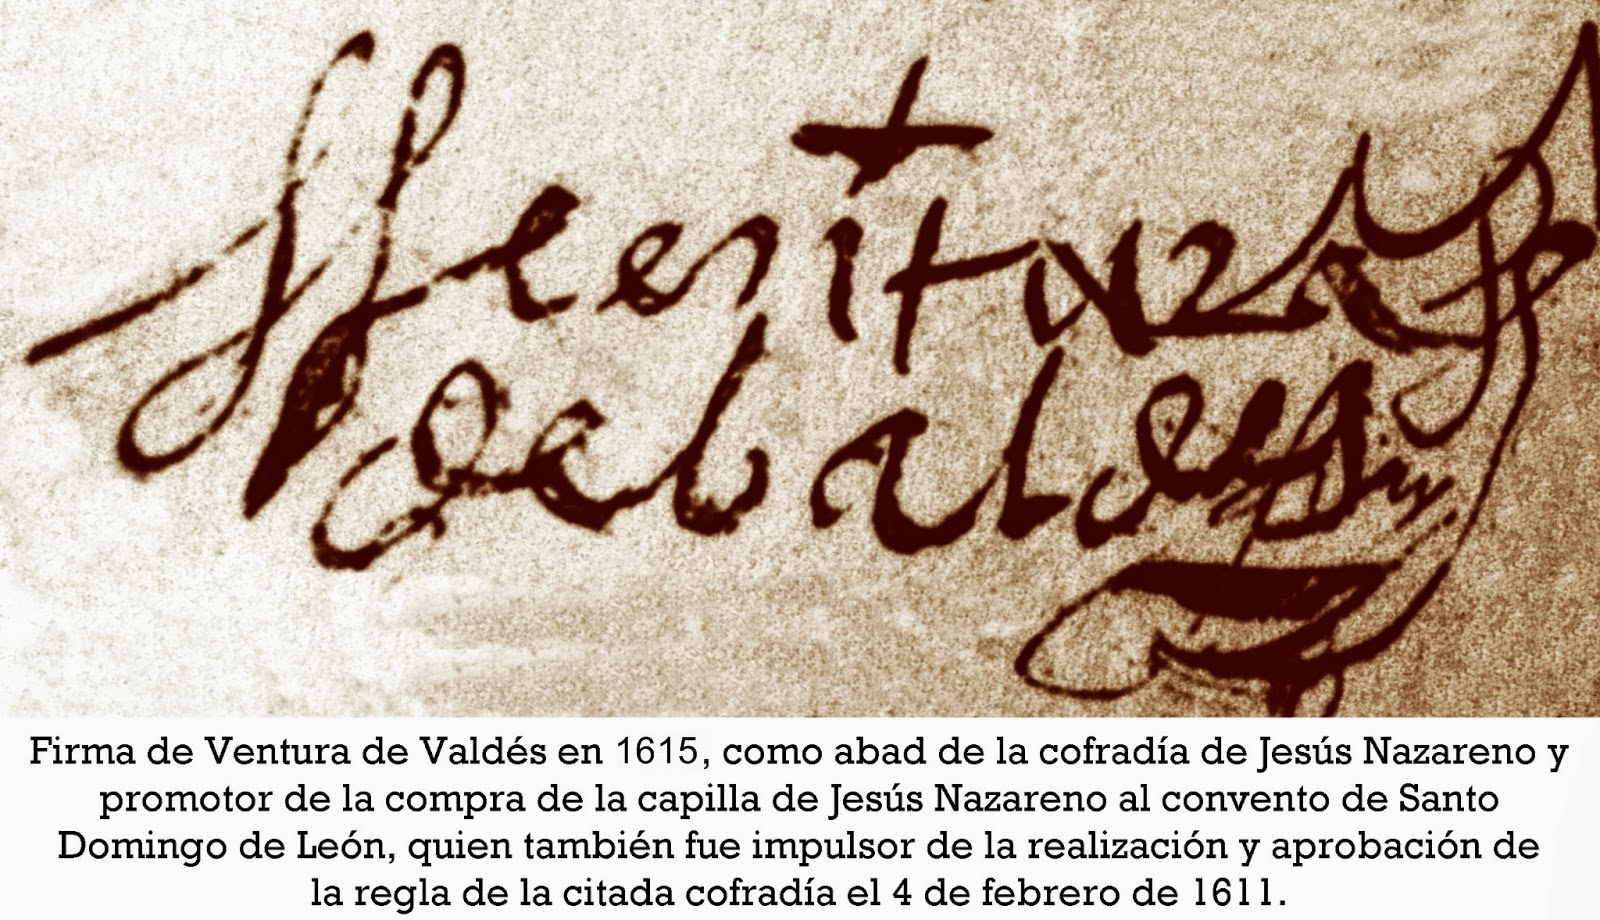 Firma de Ventura de Valdés en 1615, abad de la cofradía del Jesús Nazareno de León, ya en 1610. A.H.P.L. Foto G. Márquez.